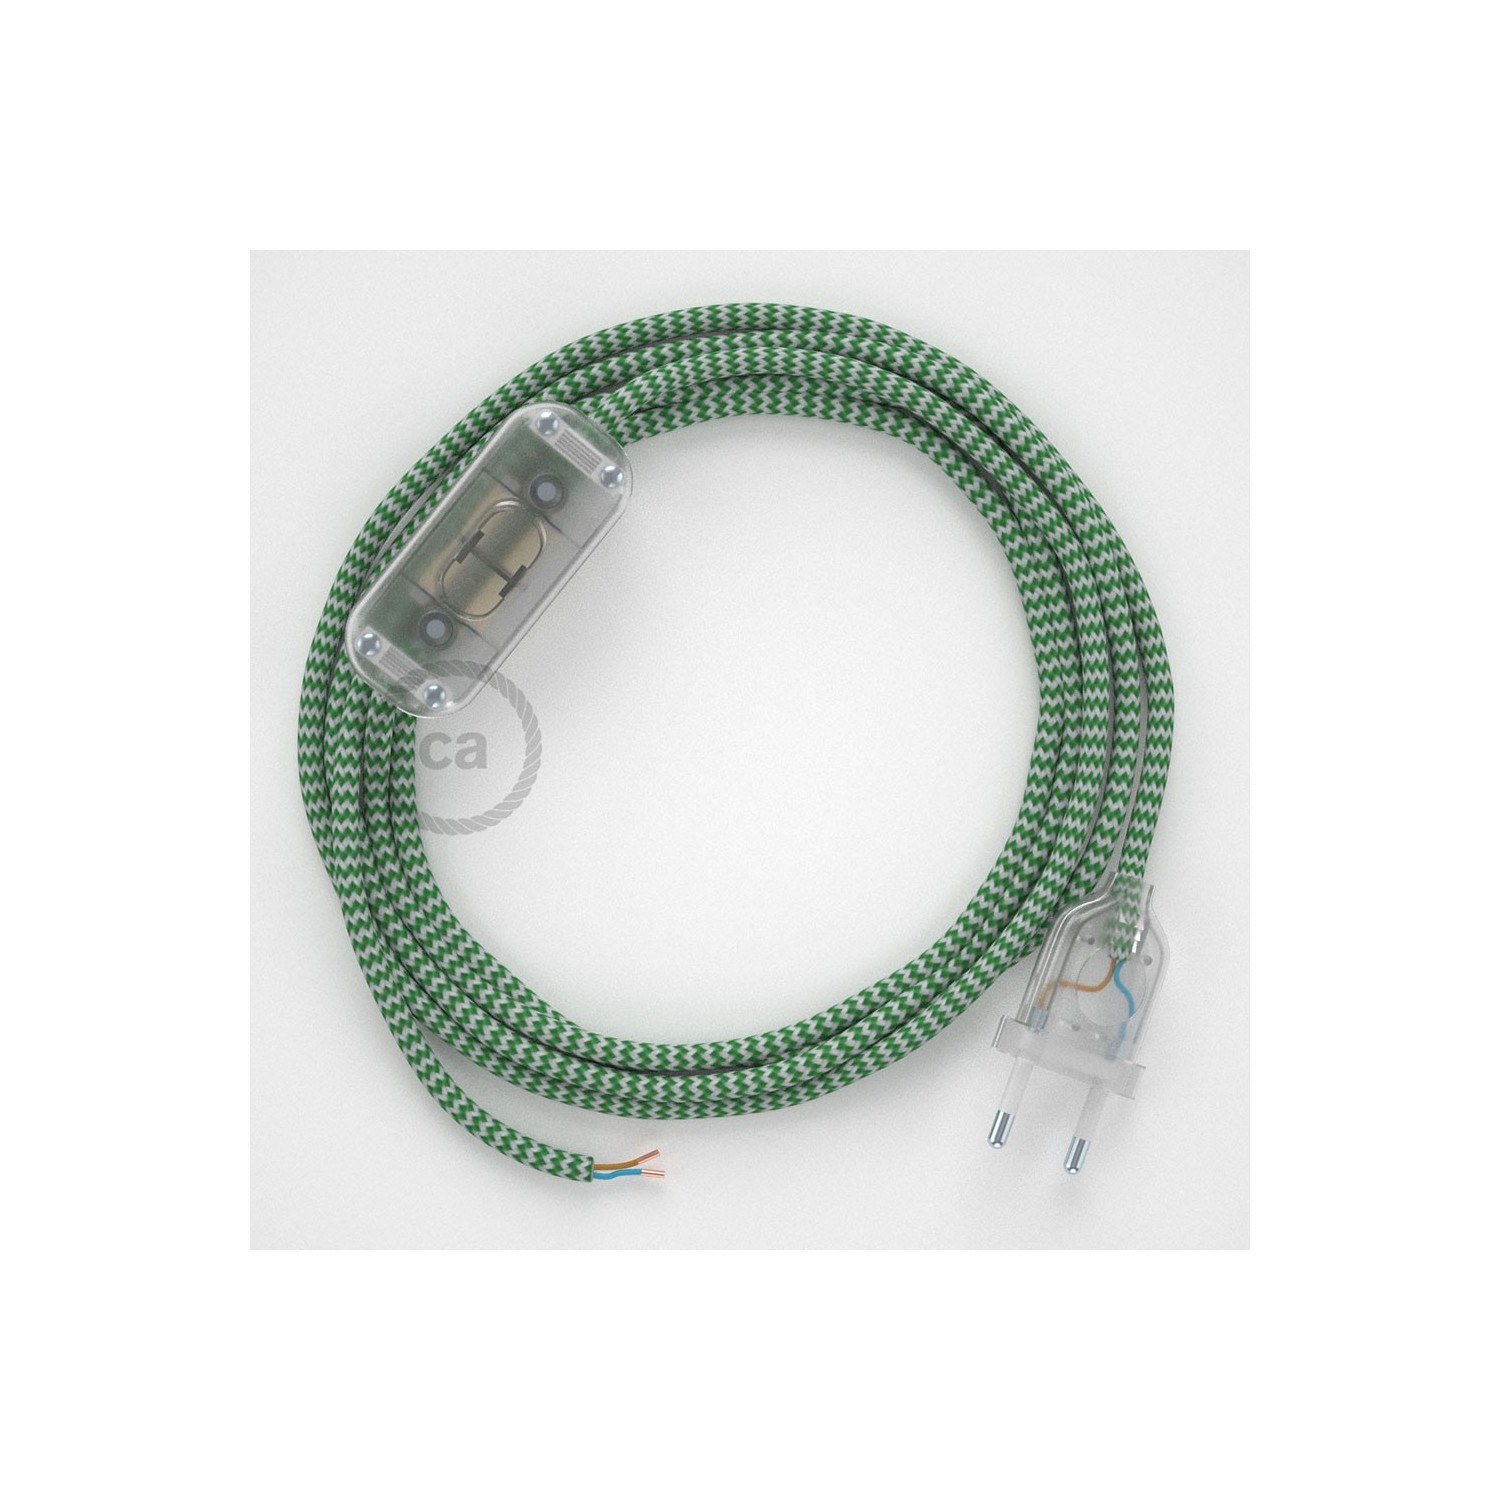 Cablaggio per lampada, cavo RZ06 Effetto Seta ZigZag Verde 1,80 m. Scegli il colore dell'interruttore e della spina.